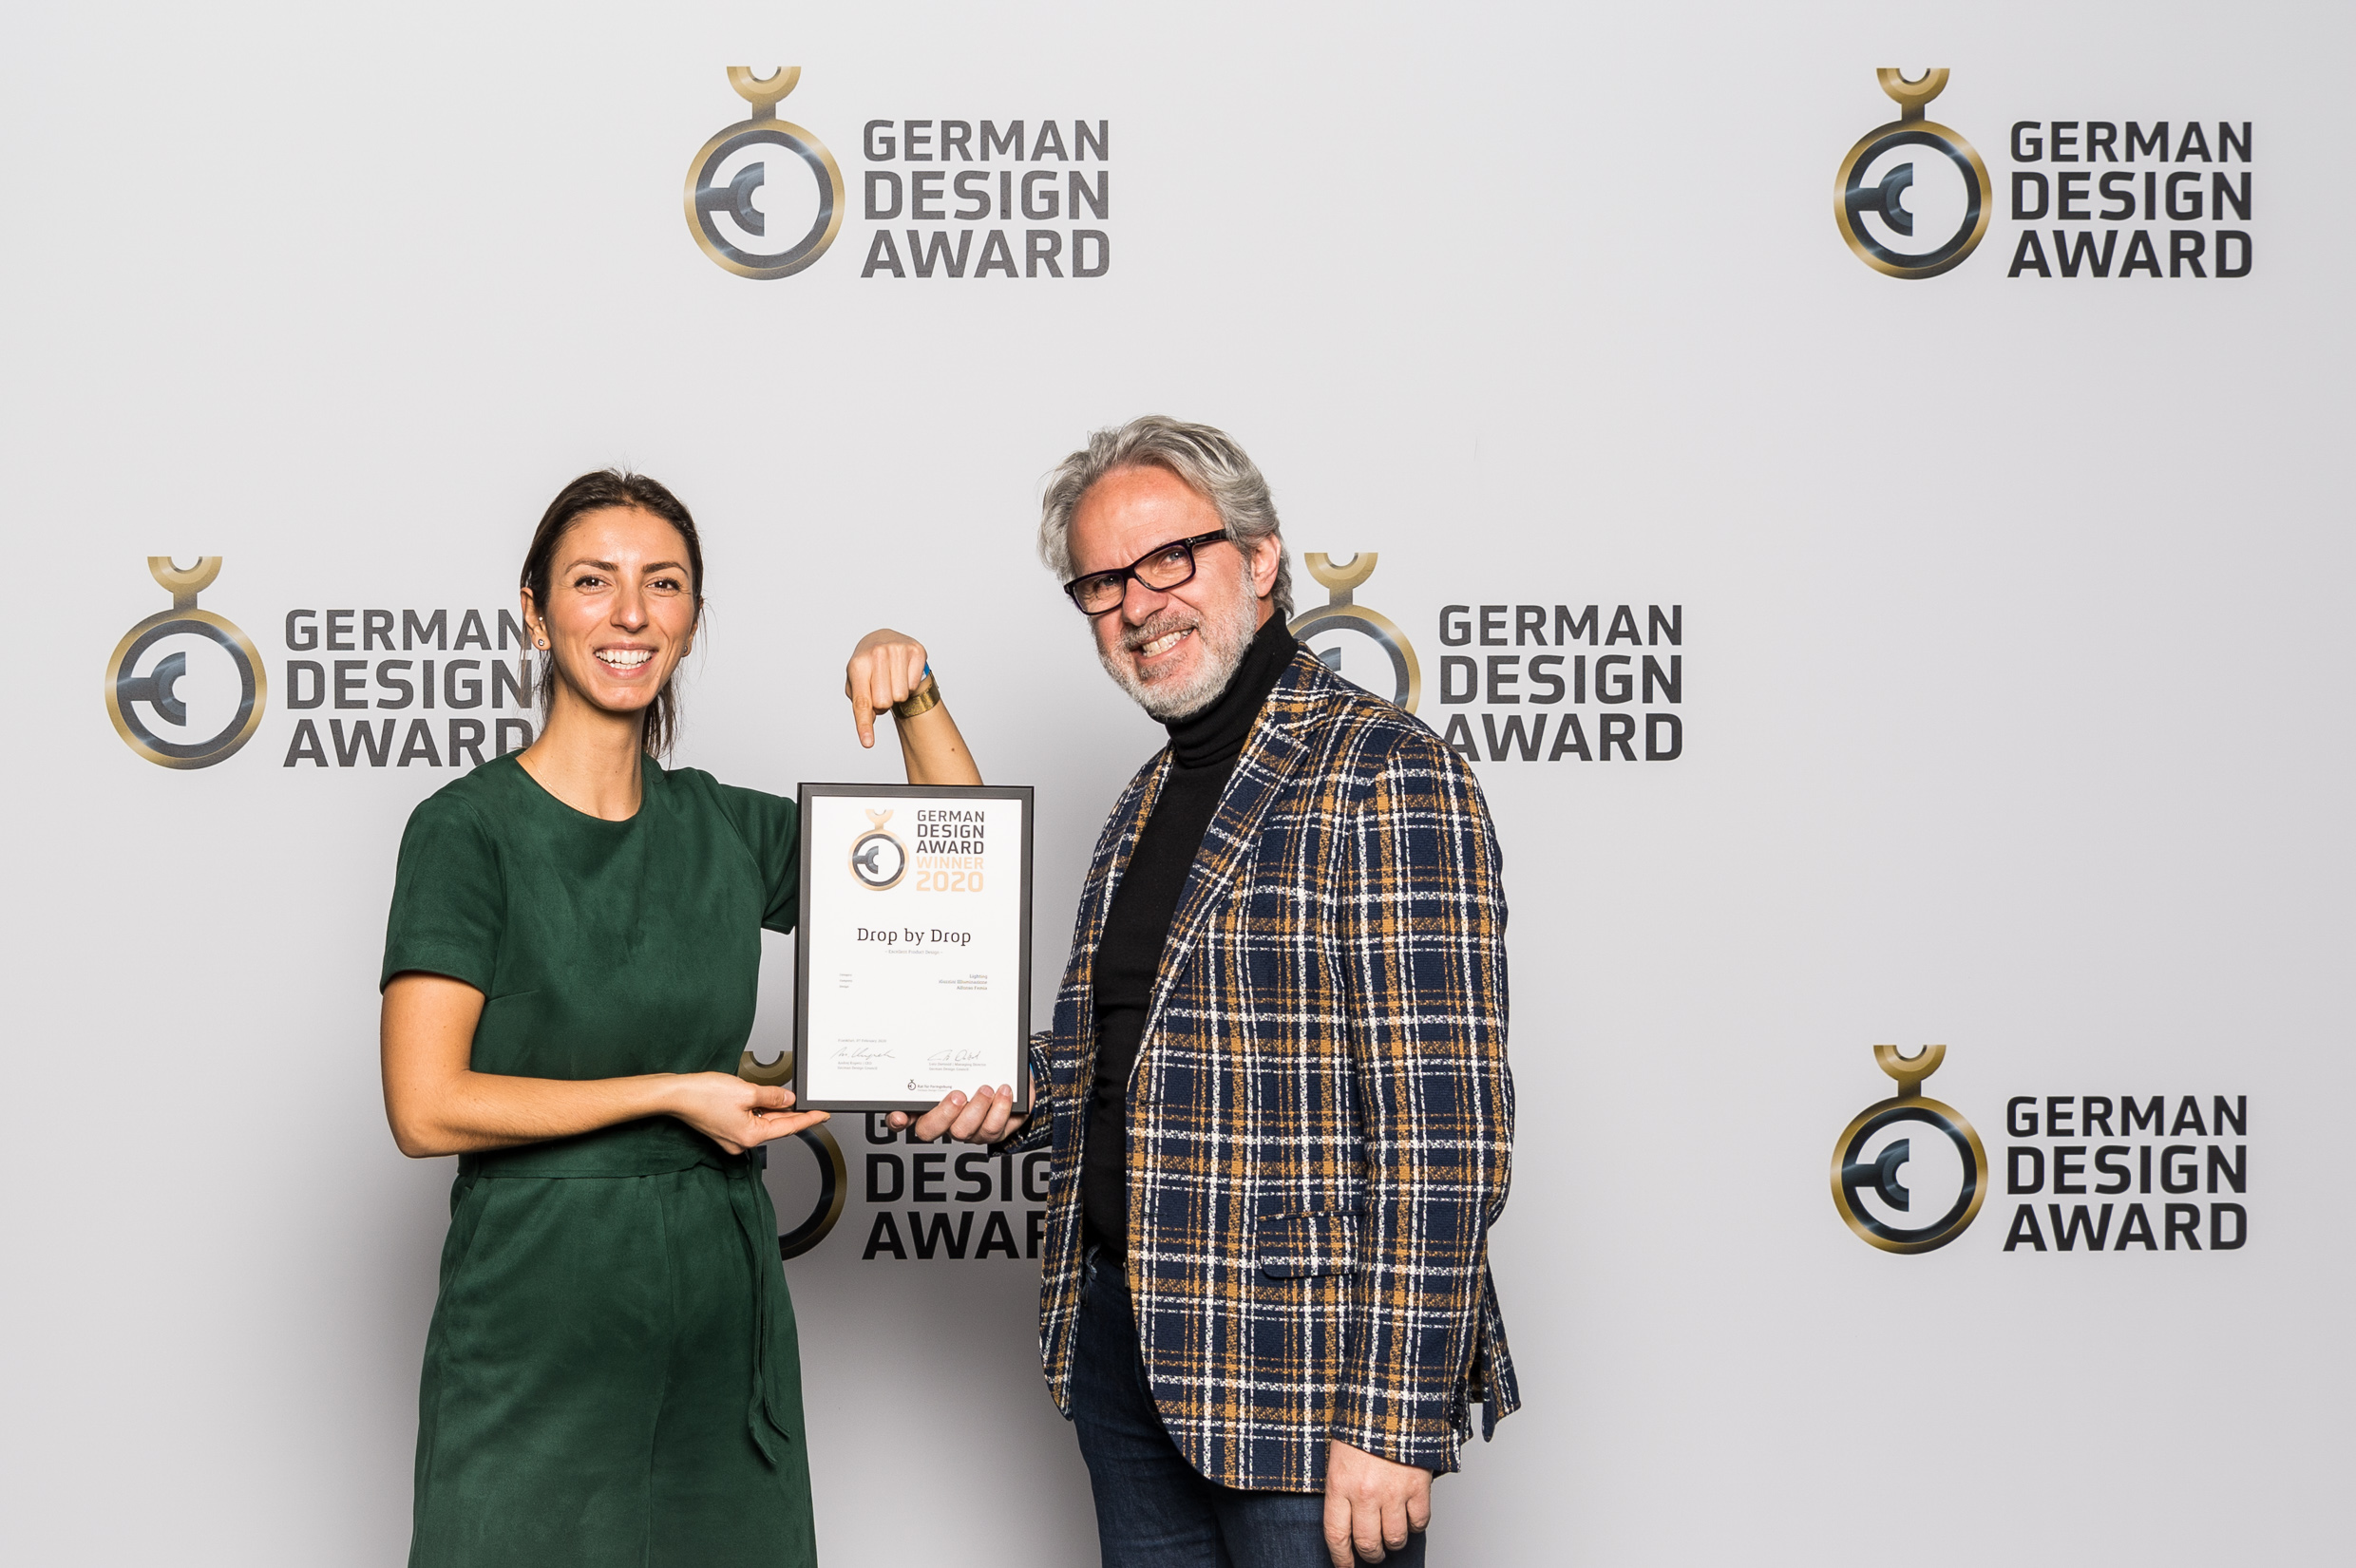 Le German Design Award 2020 récompense le Drop-by-Drop